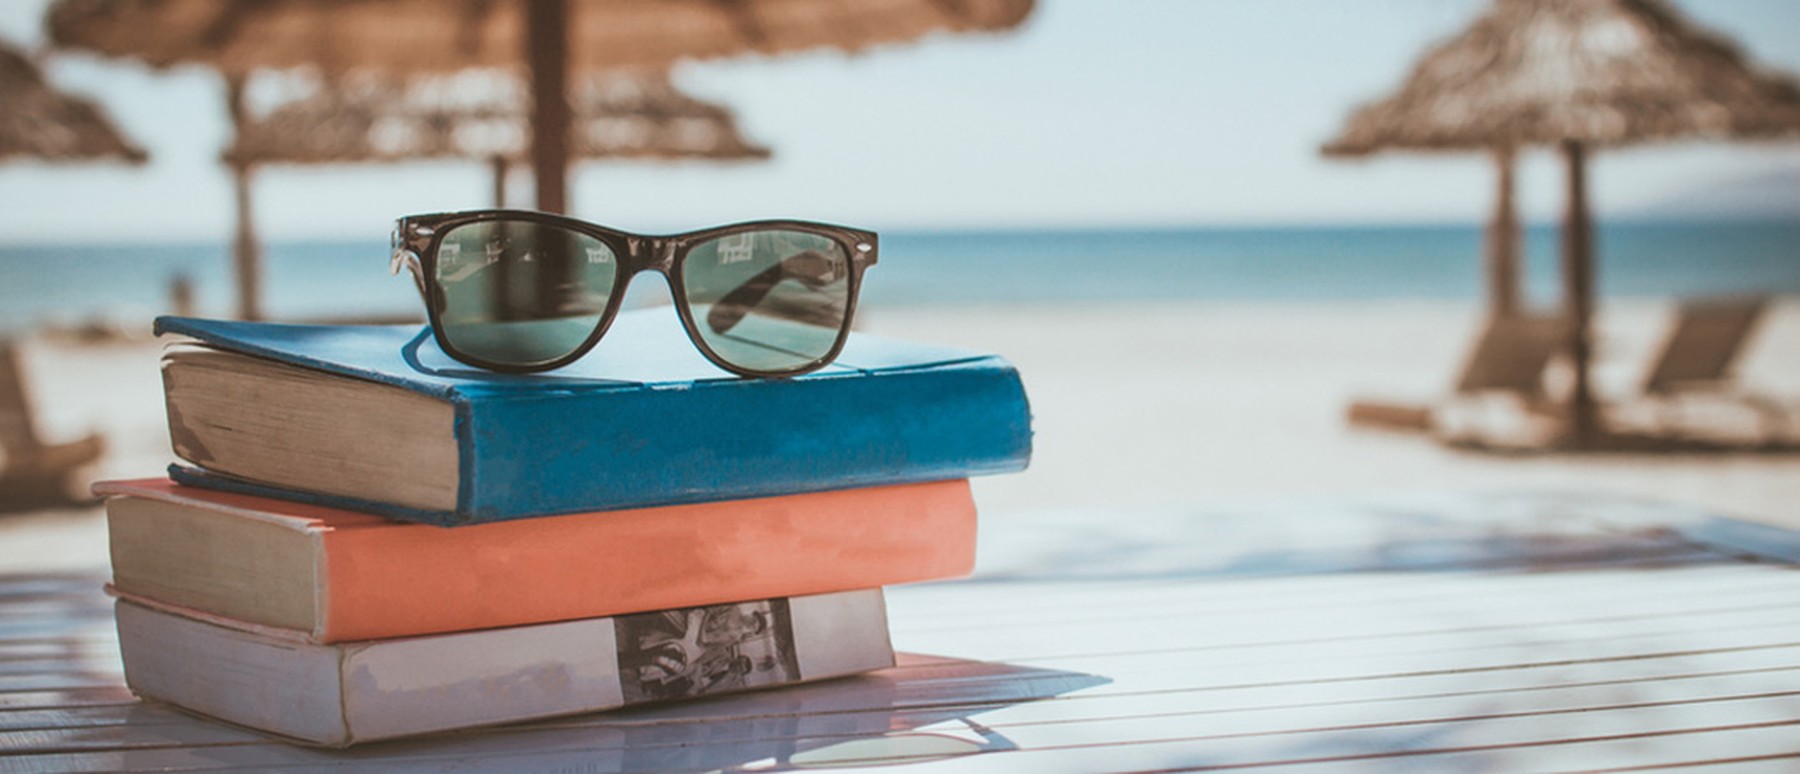 Bücher und Sonnenbrille gelegt auf einem Tisch und Sonnenschirme und Strand im Hintergrund